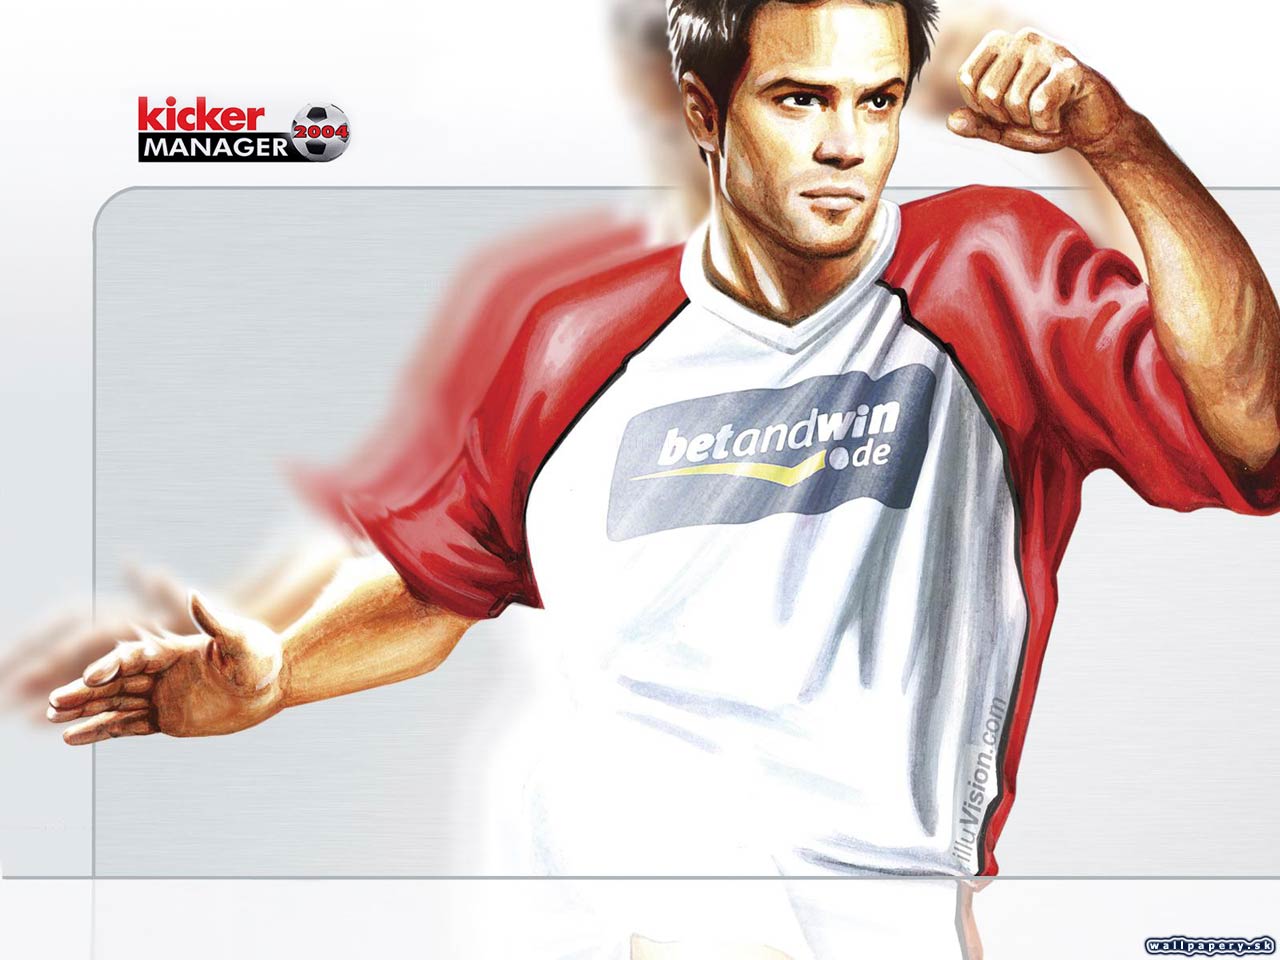 Kicker Manager 2004 - wallpaper 1